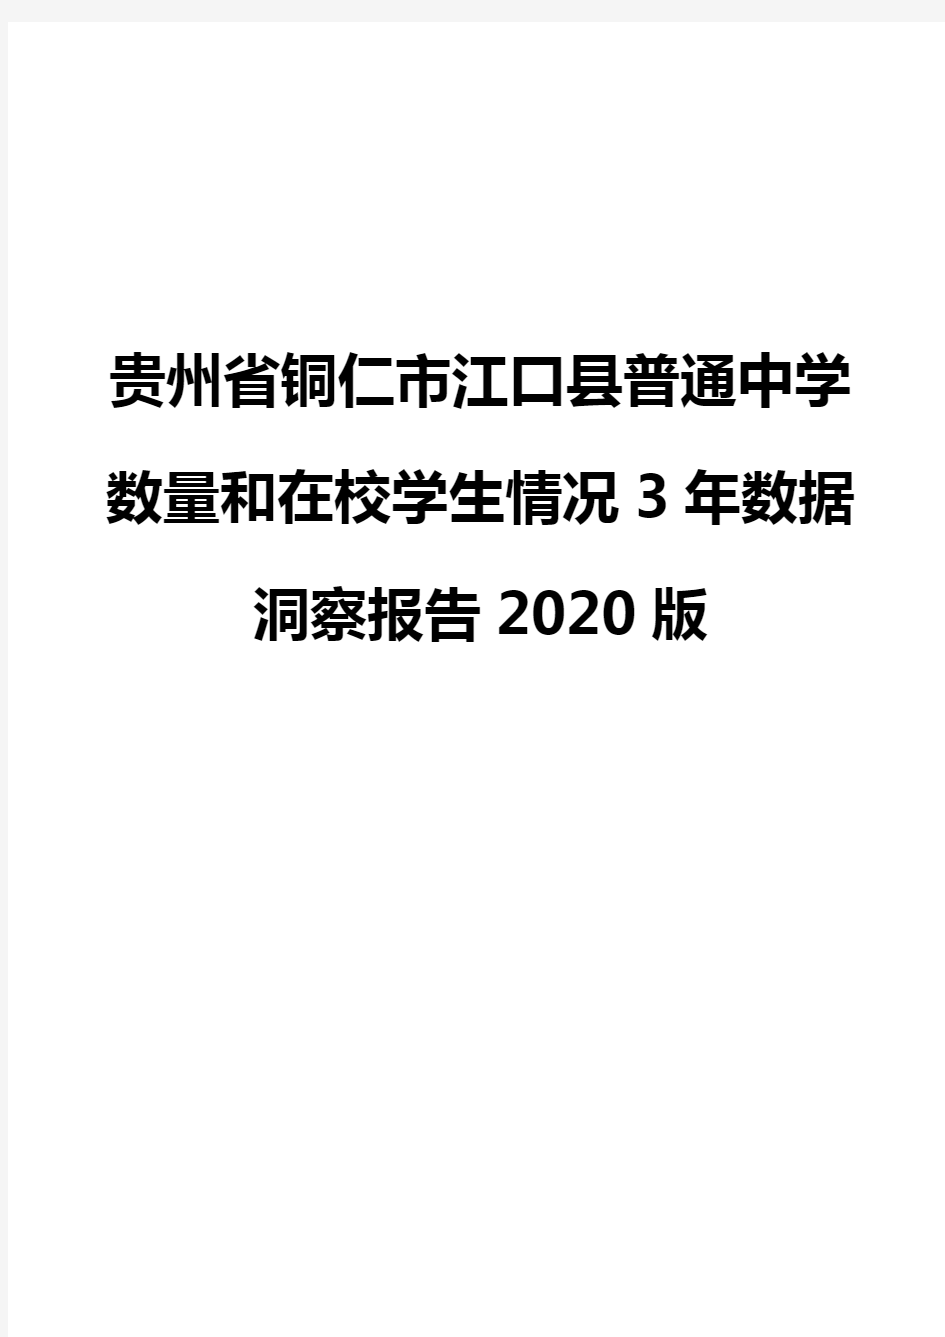 贵州省铜仁市江口县普通中学数量和在校学生情况3年数据洞察报告2020版